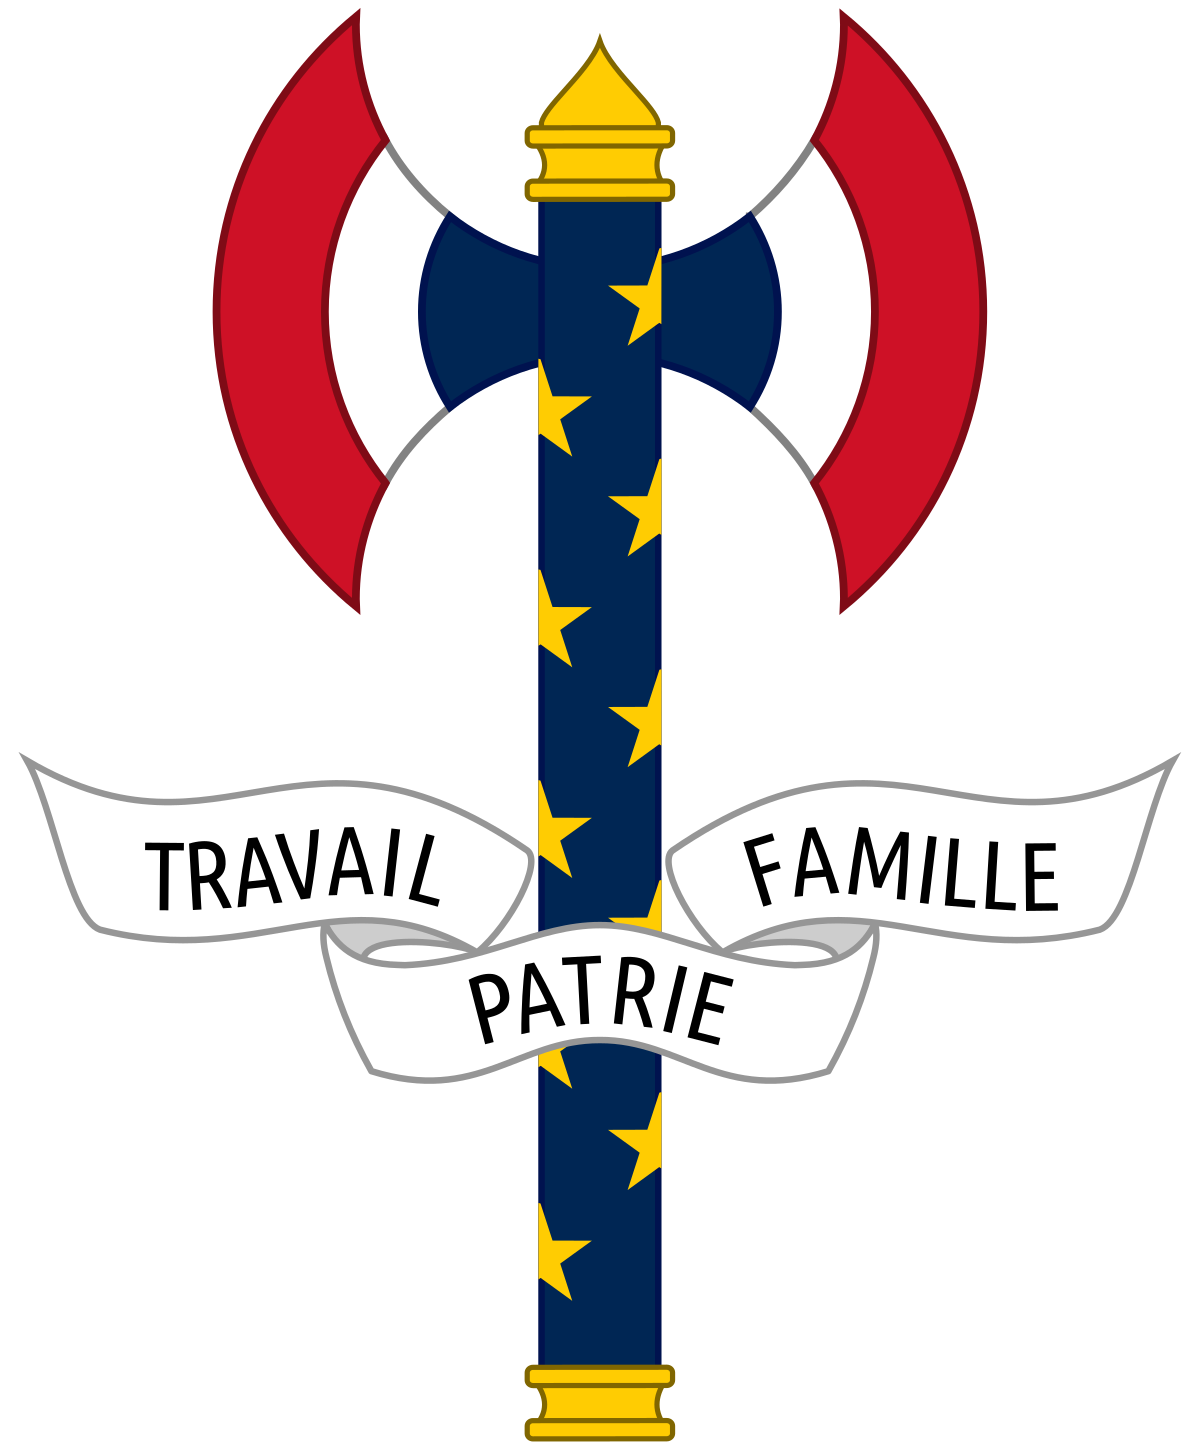 Wappen Frankreichs